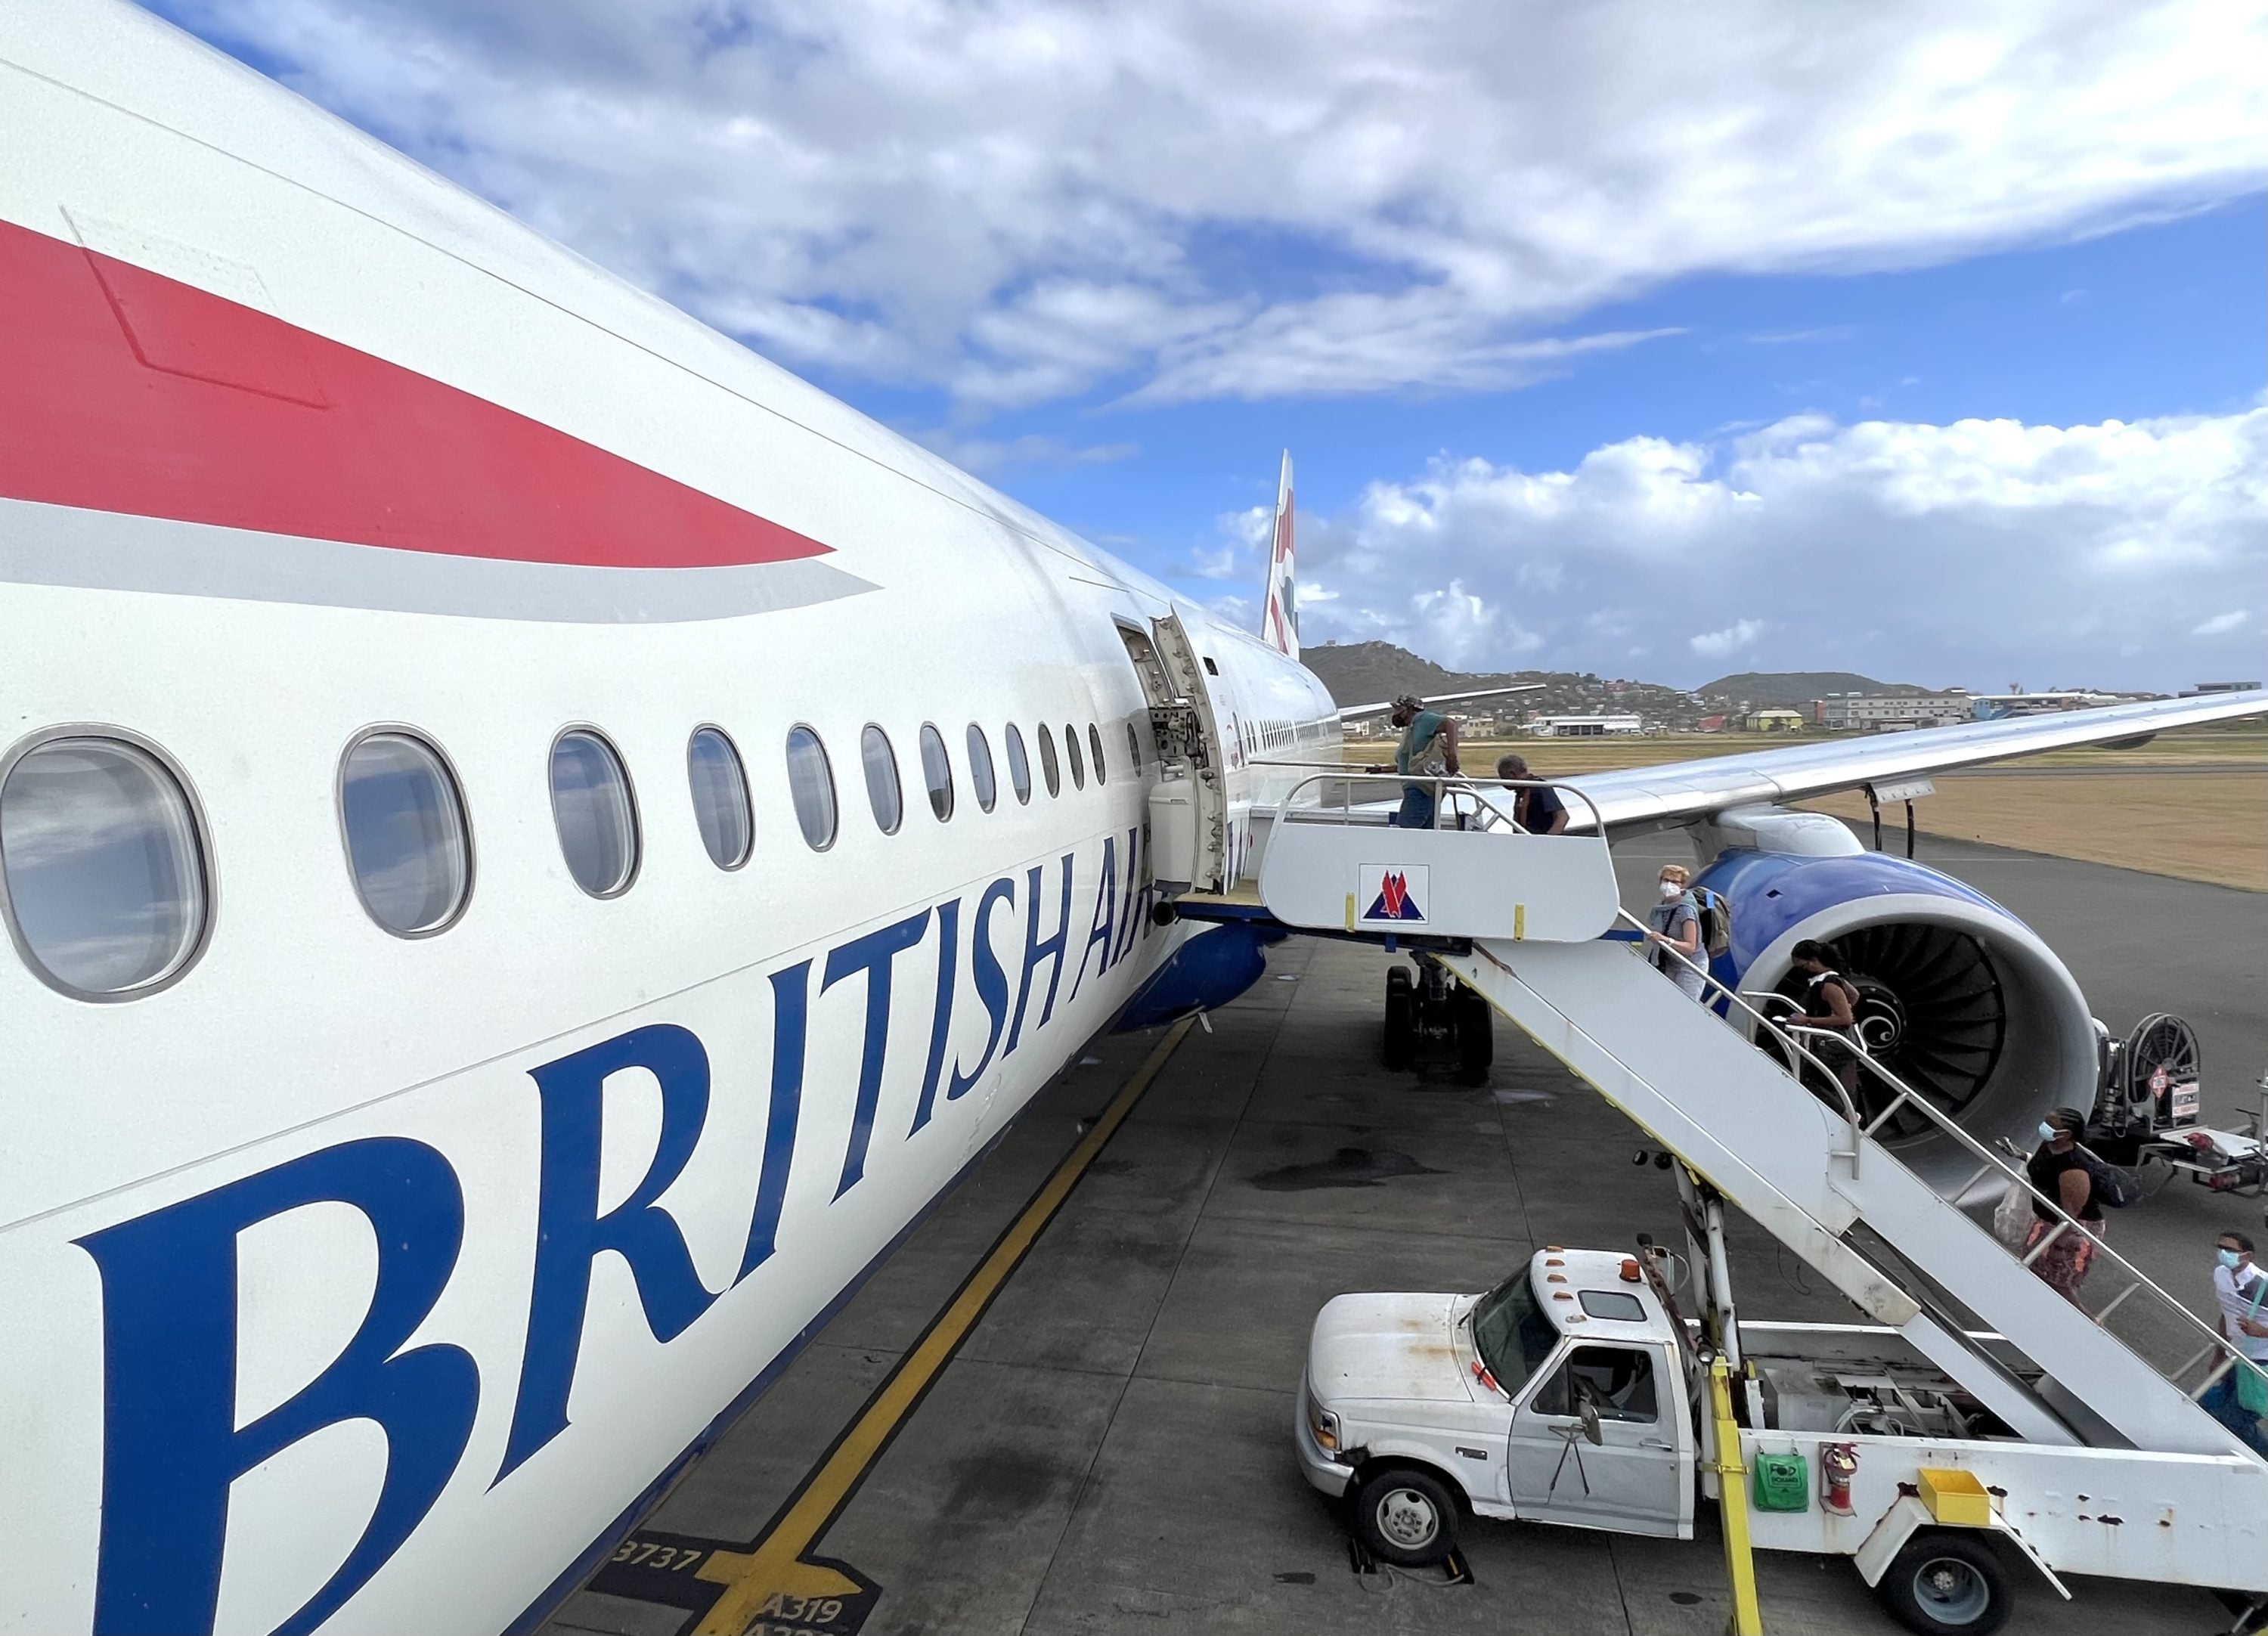 British Airways Boeing 777 200 Club World UVF view on boarding